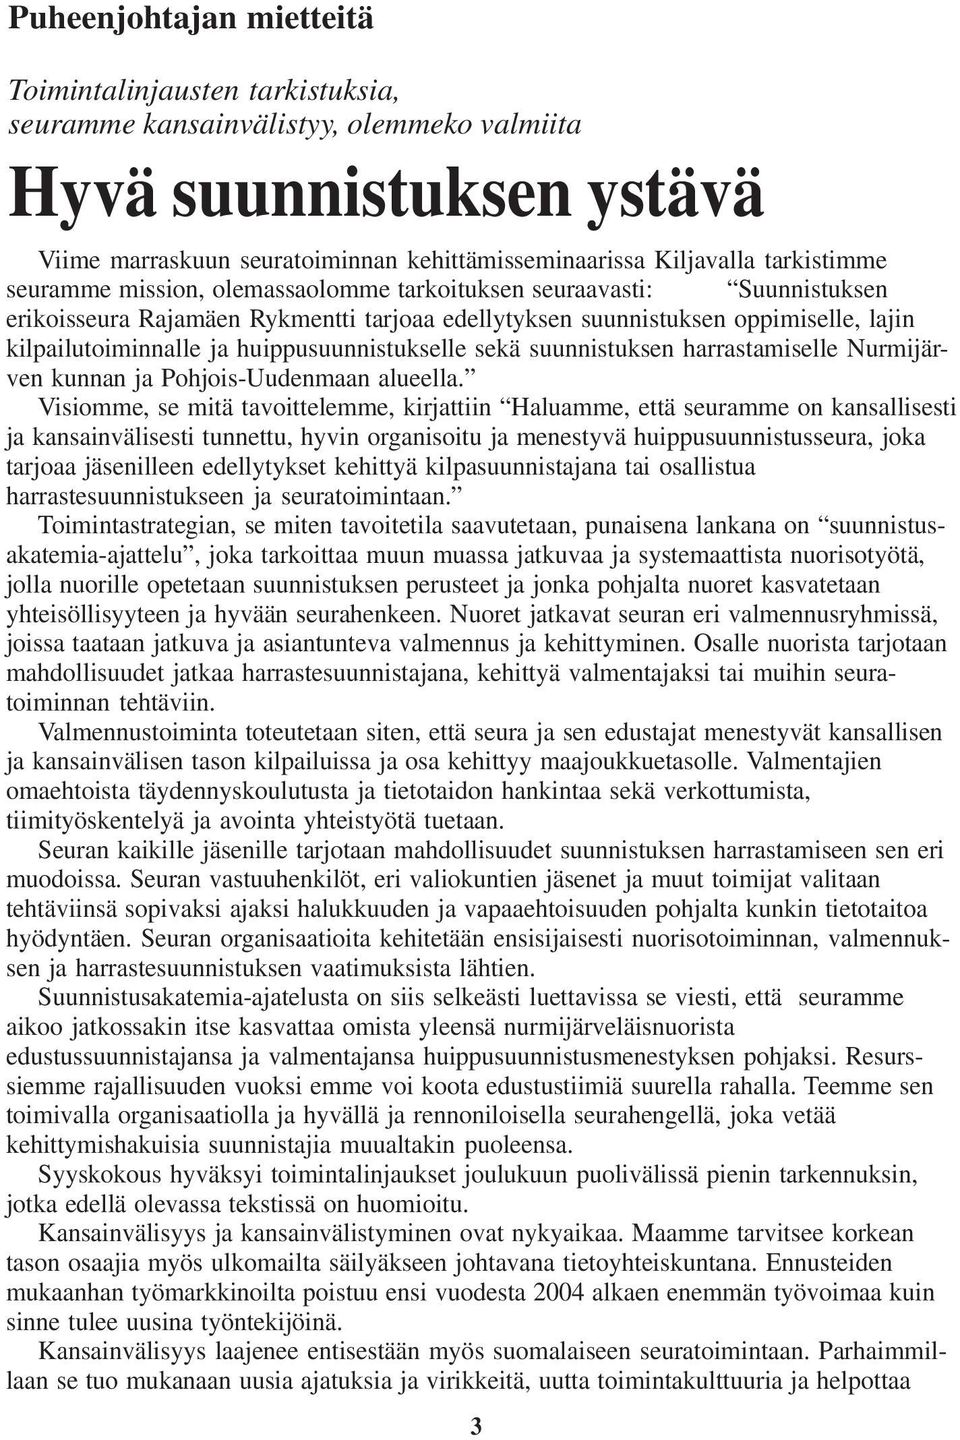 huippusuunnistukselle sekä suunnistuksen harrastamiselle Nurmijärven kunnan ja Pohjois-Uudenmaan alueella.